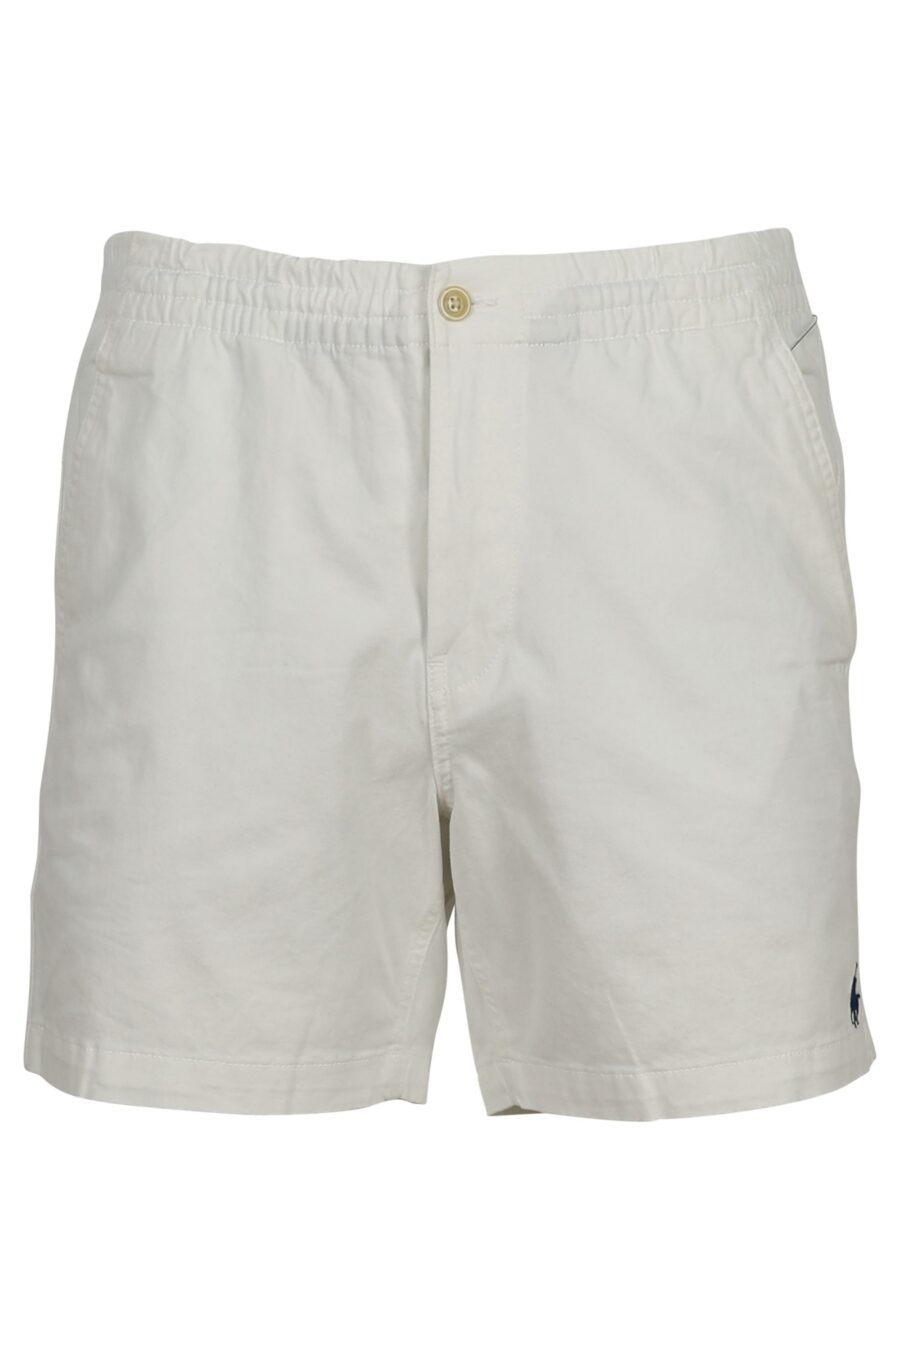 Weiße Shorts mit Mini-Logo "Polo" - 3614712774080